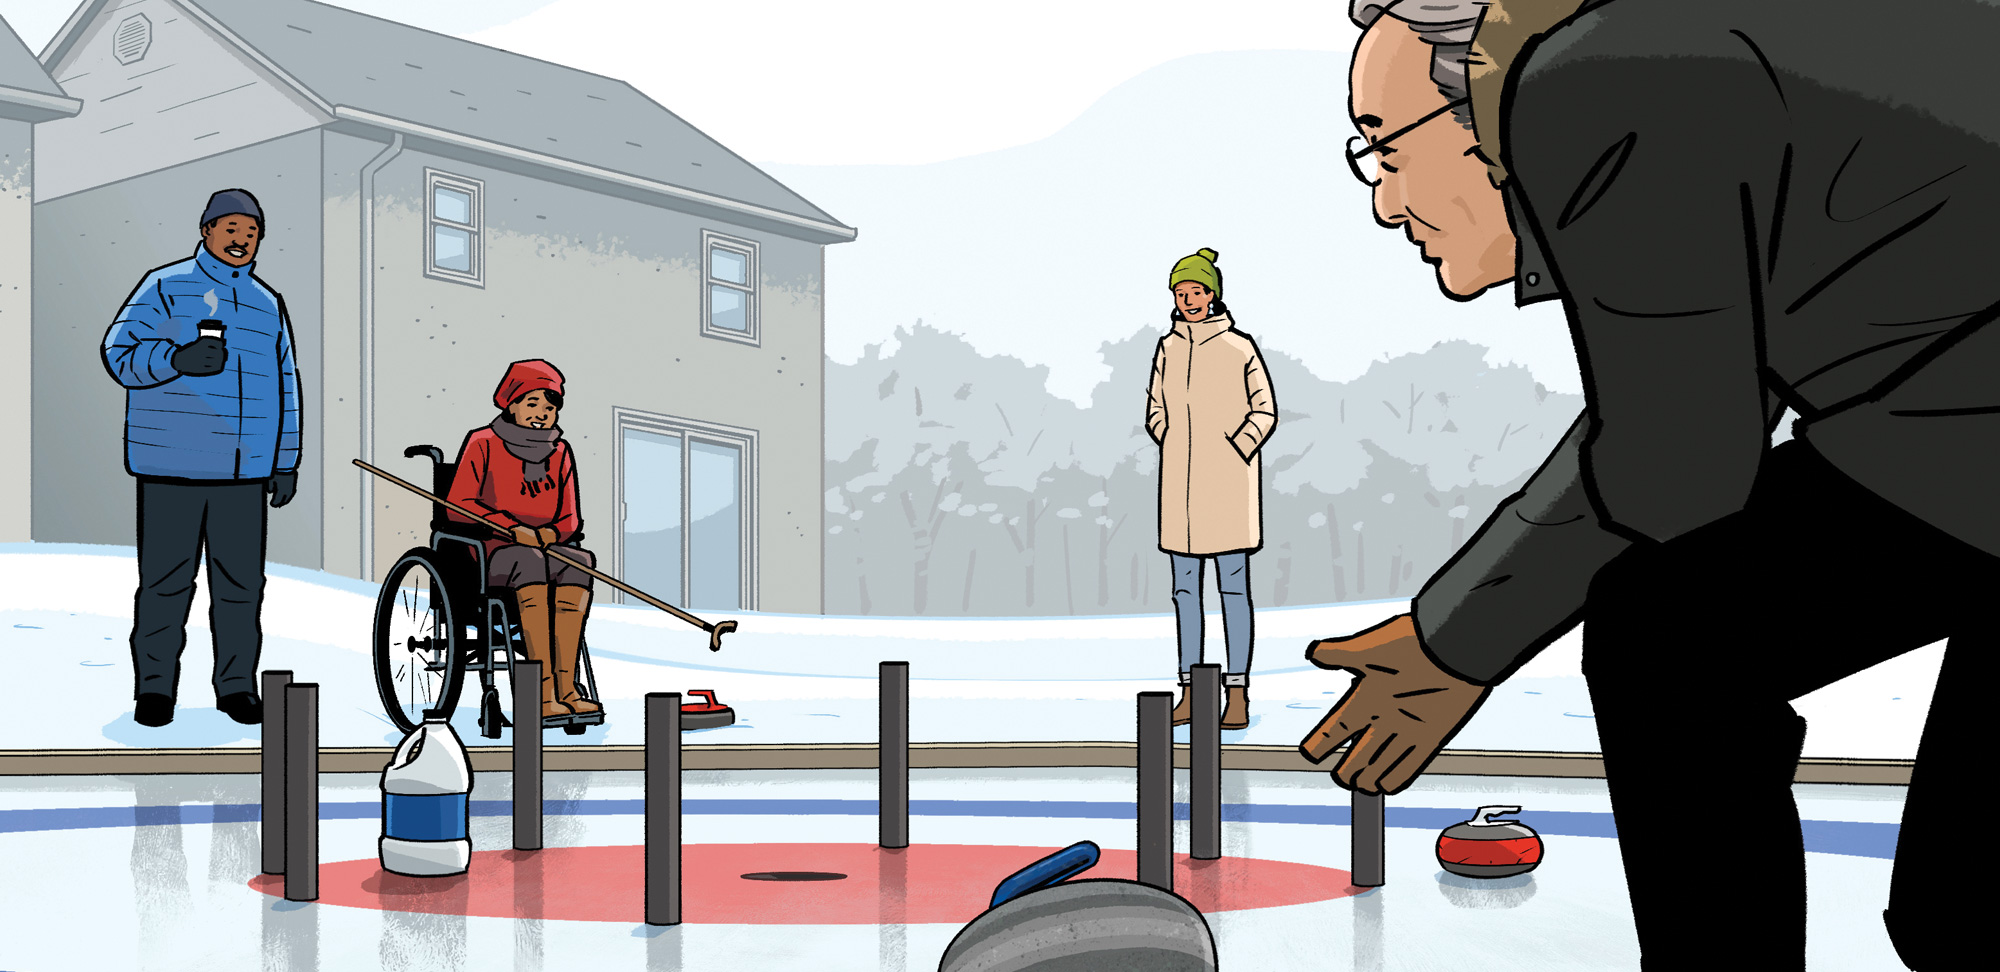 En partie curling, en partie croquignoles et tout à fait canadien